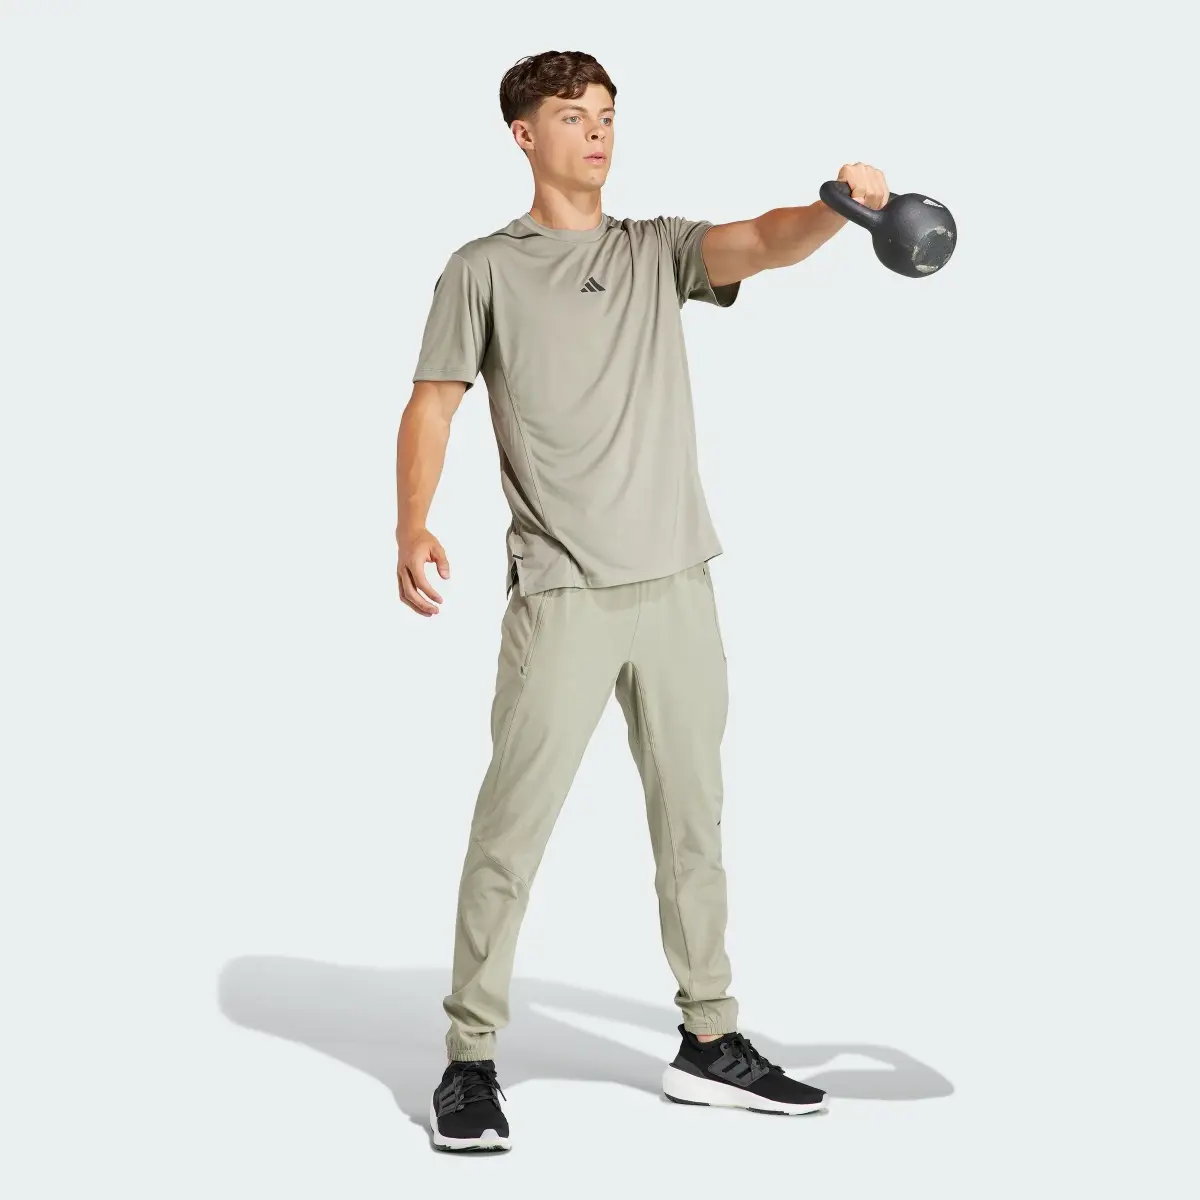 Adidas Pantaloni Designed for Training Workout. 3